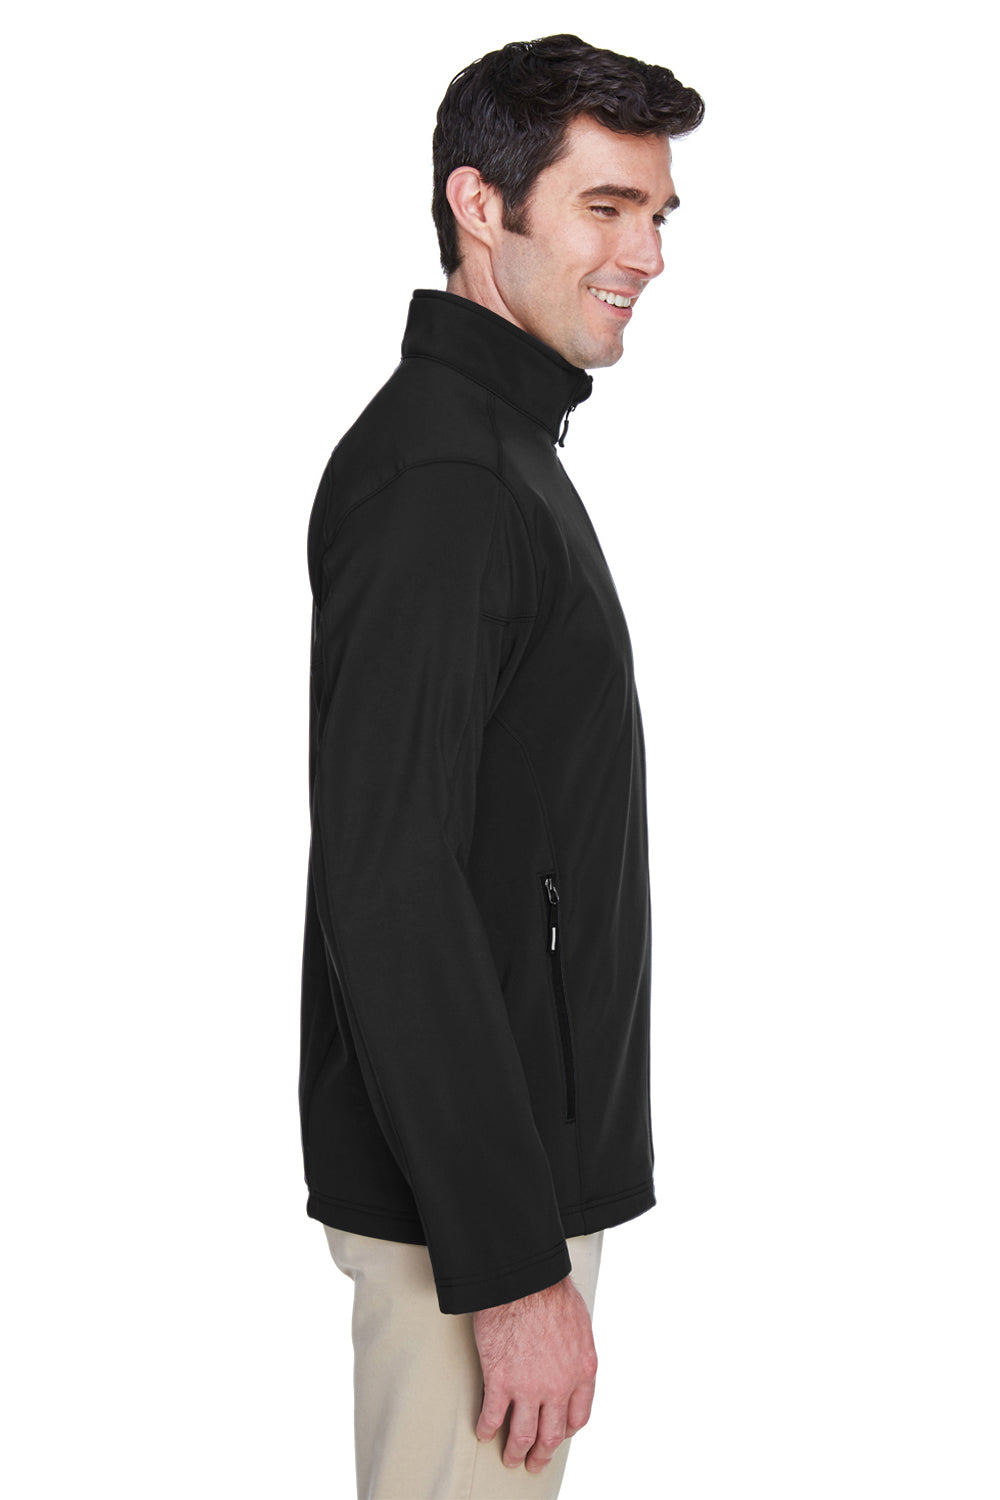 Core 365 88184 Mens Cruise Water Resistant Full Zip Jacket Black Side